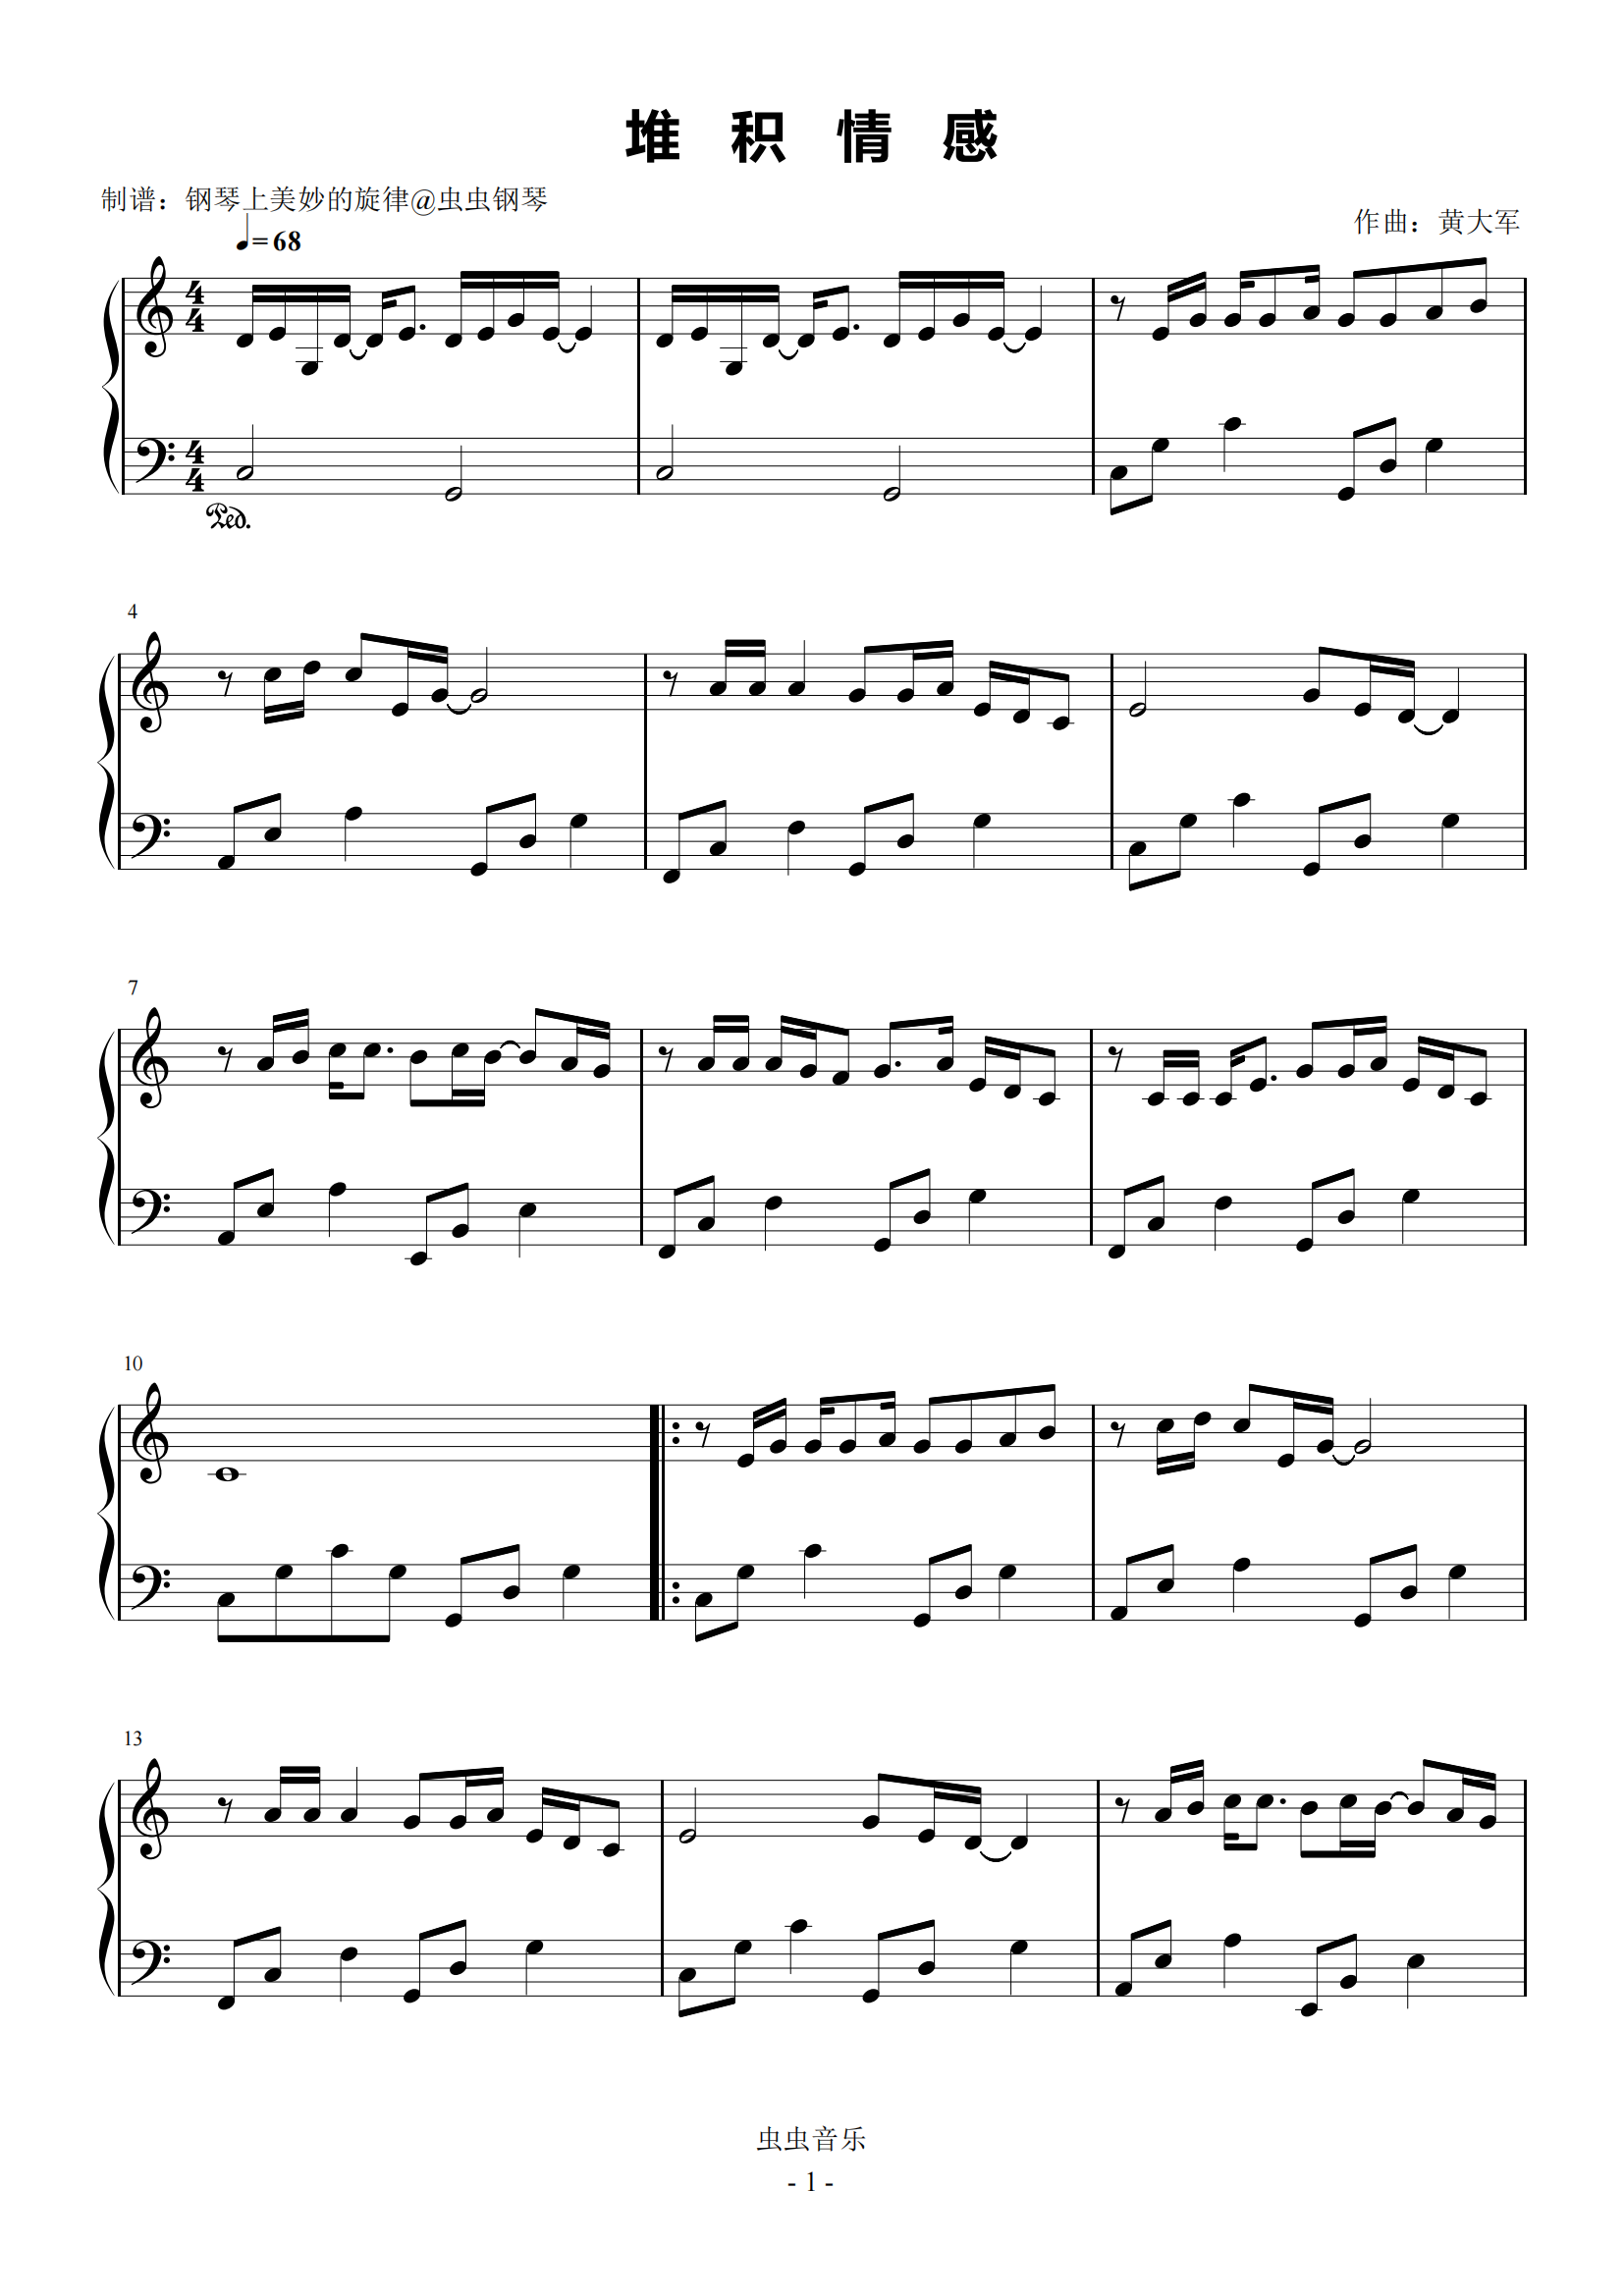 简化版《想你》钢琴谱 - 初学者最易上手 - 陈意涵带指法钢琴谱子 - 钢琴简谱